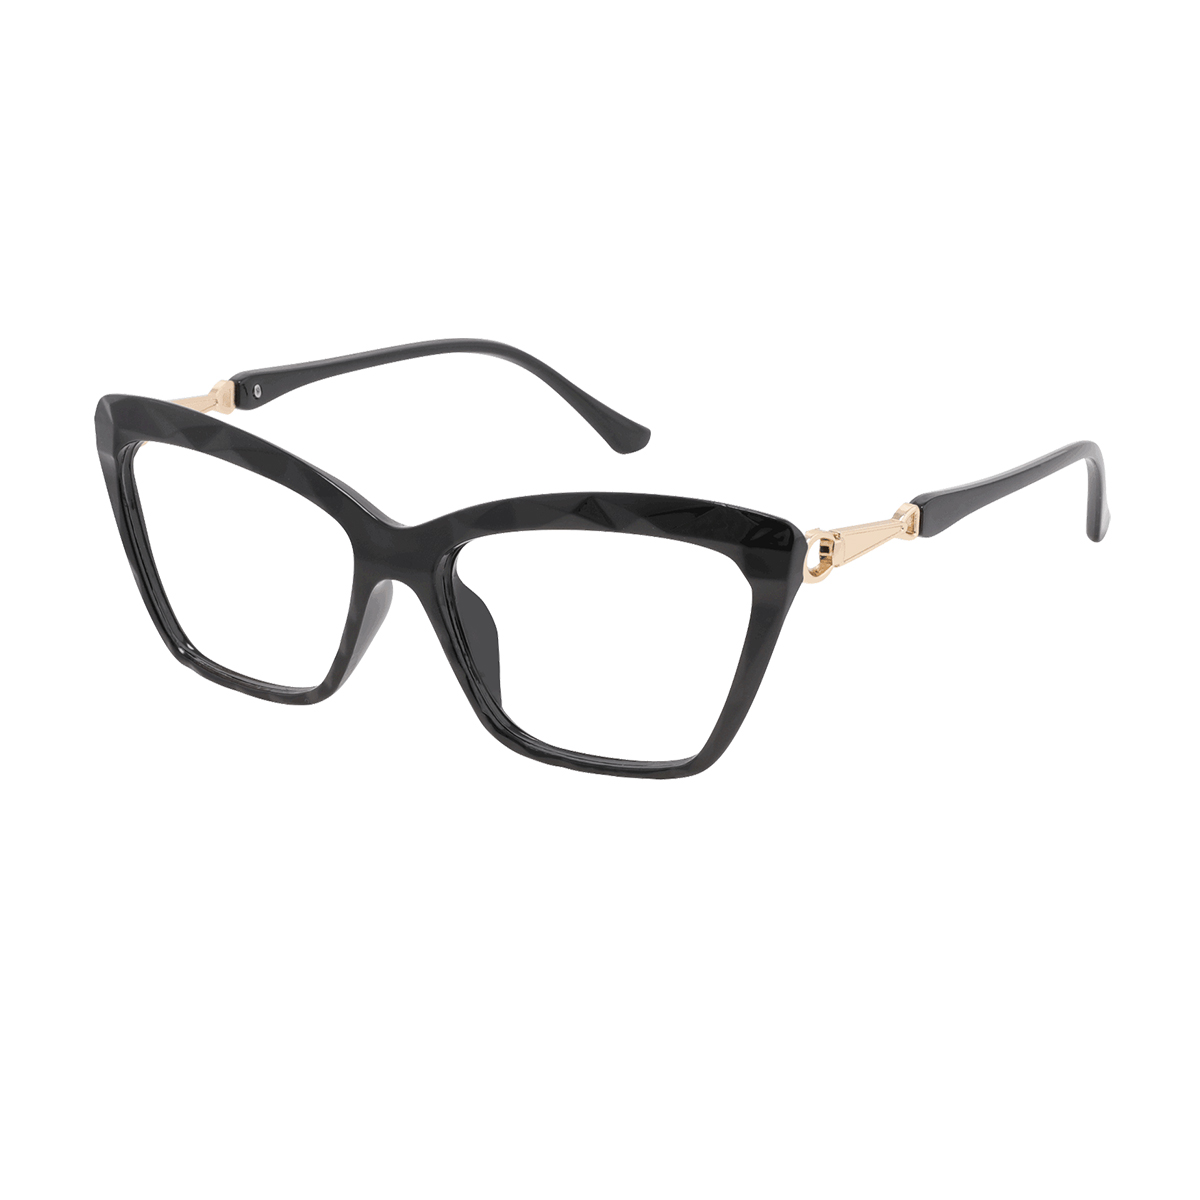 Leary - Cat-eye Black Reading Glasses for Women